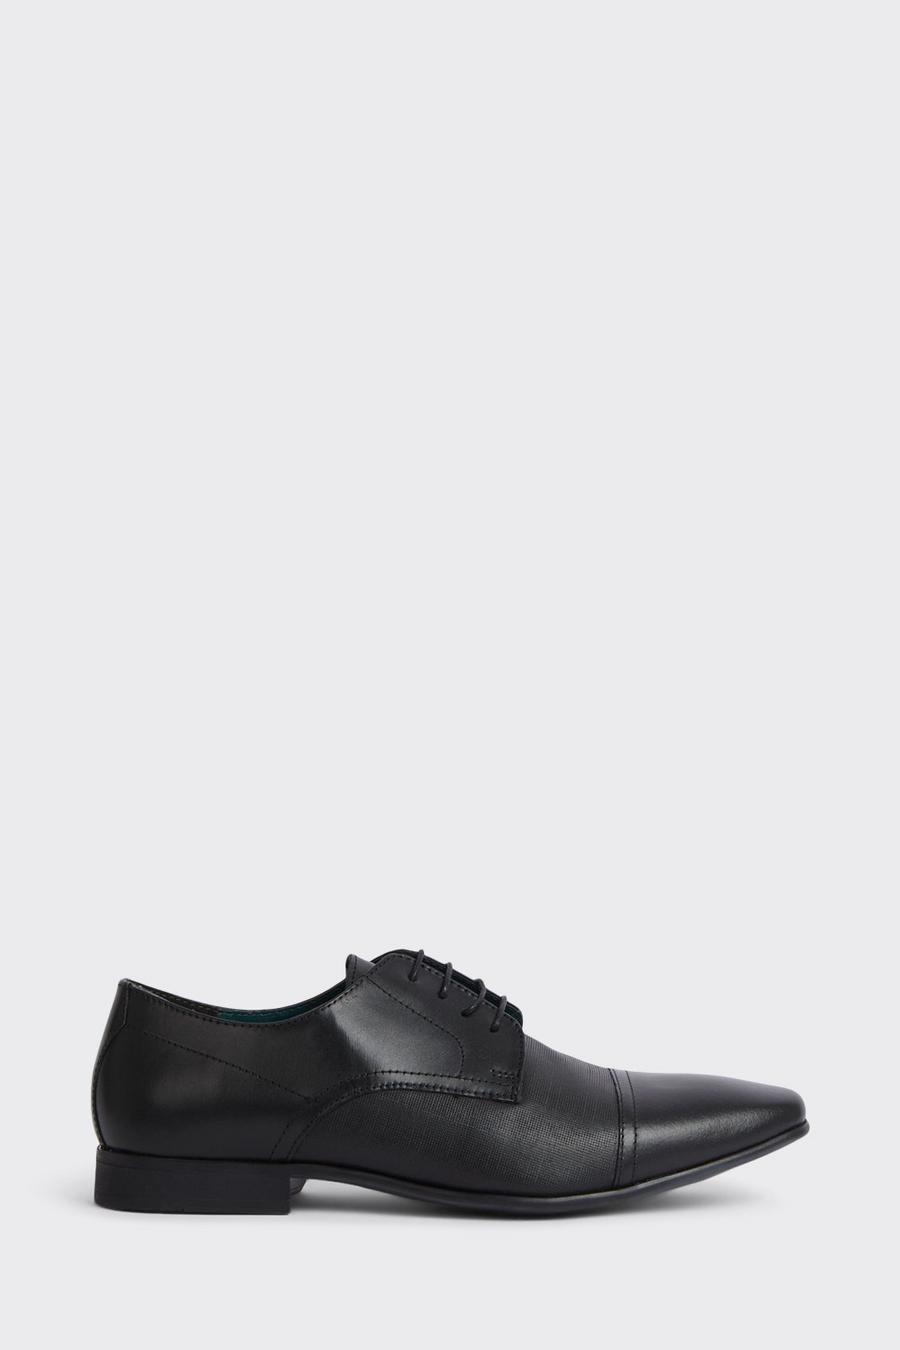 Black Leather Cap Toe Derby Shoes